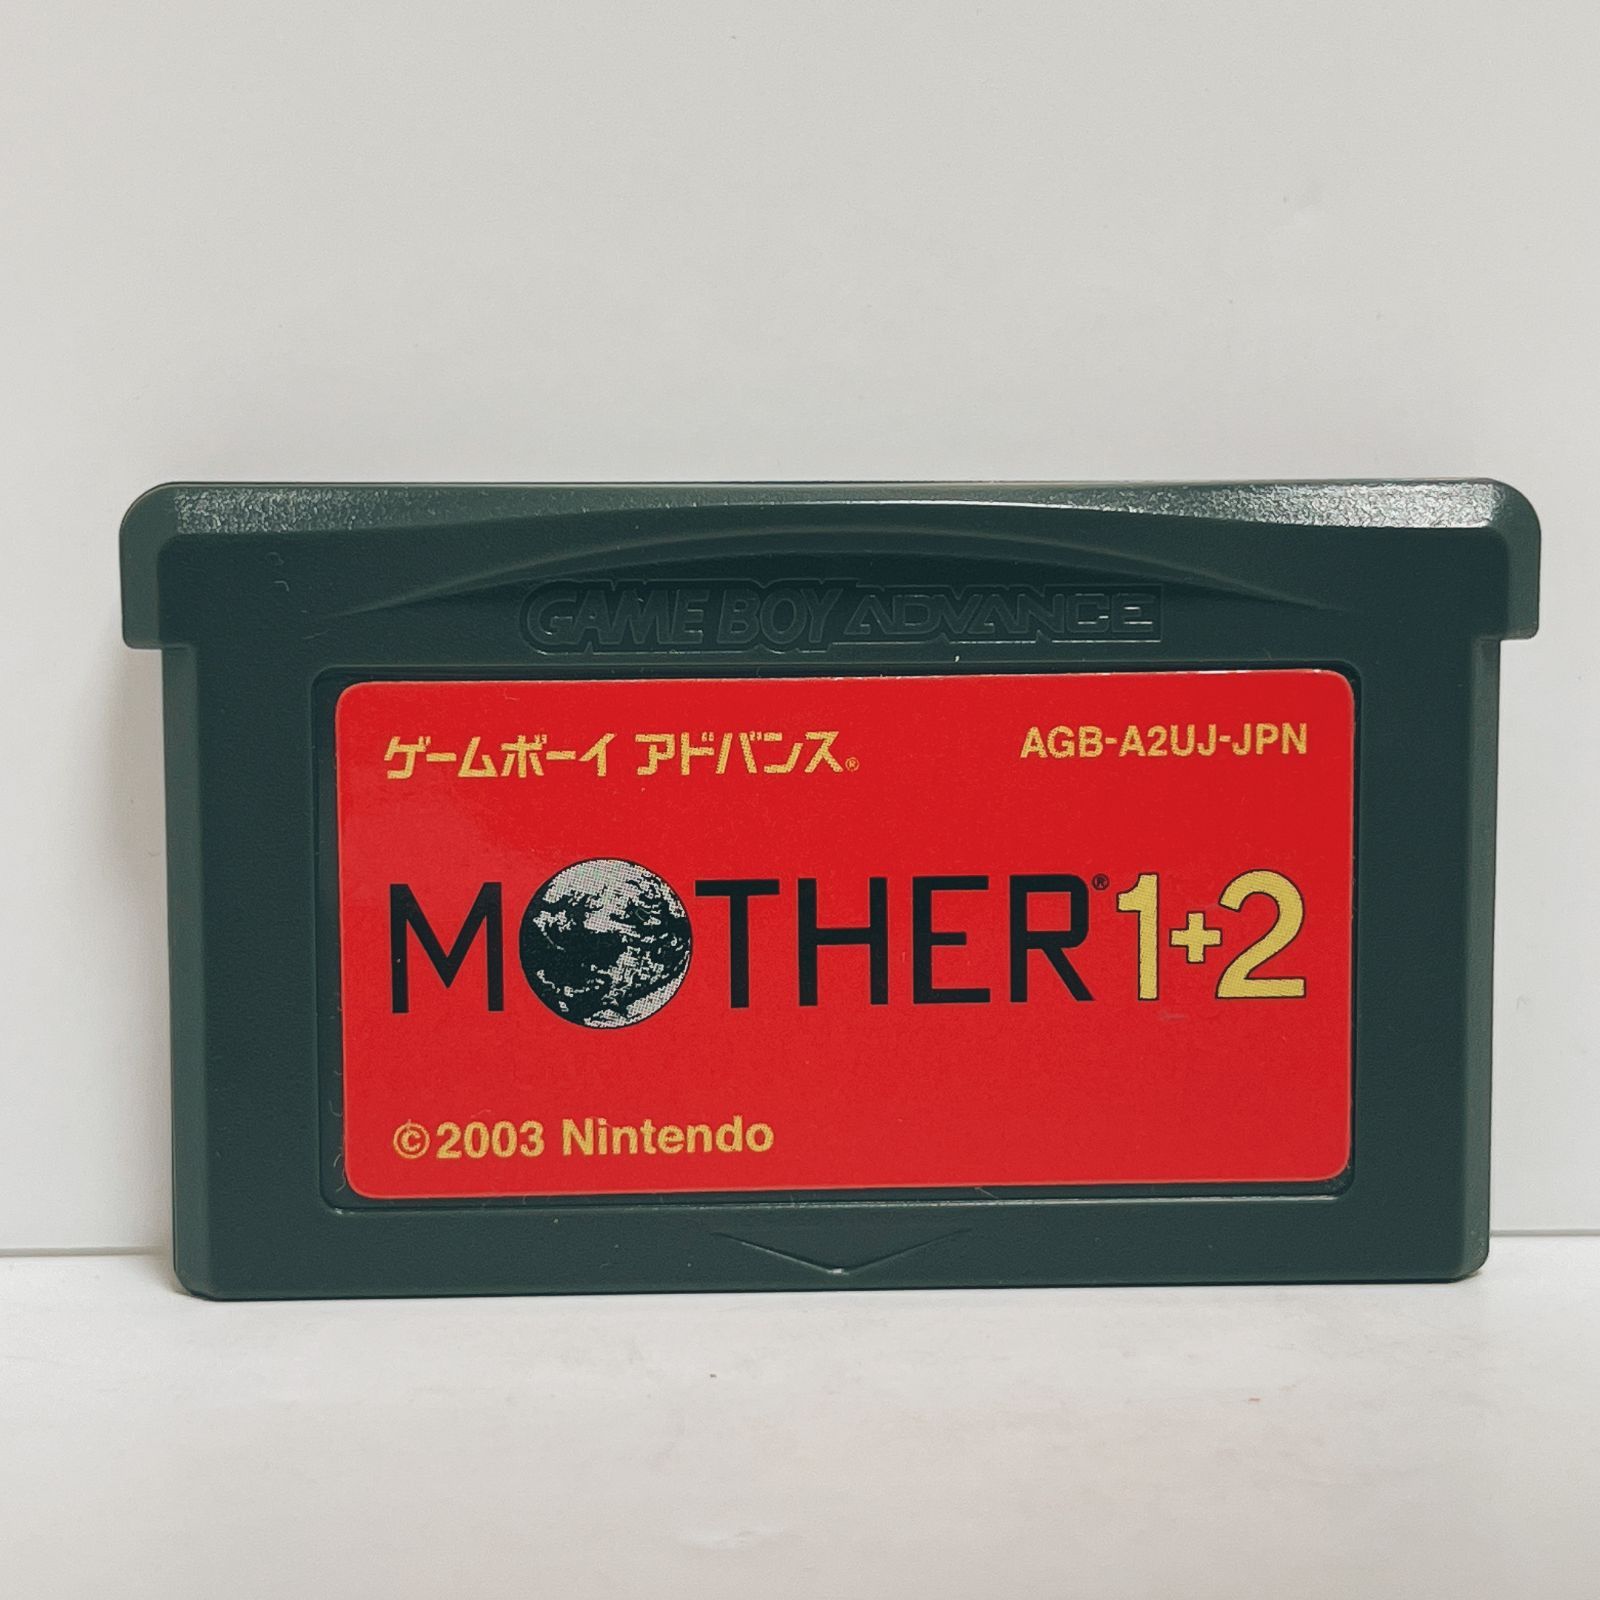 マザー1+2 MOTHER1+2 ゲームボーイアドバンス g0286 - リサイクル ...